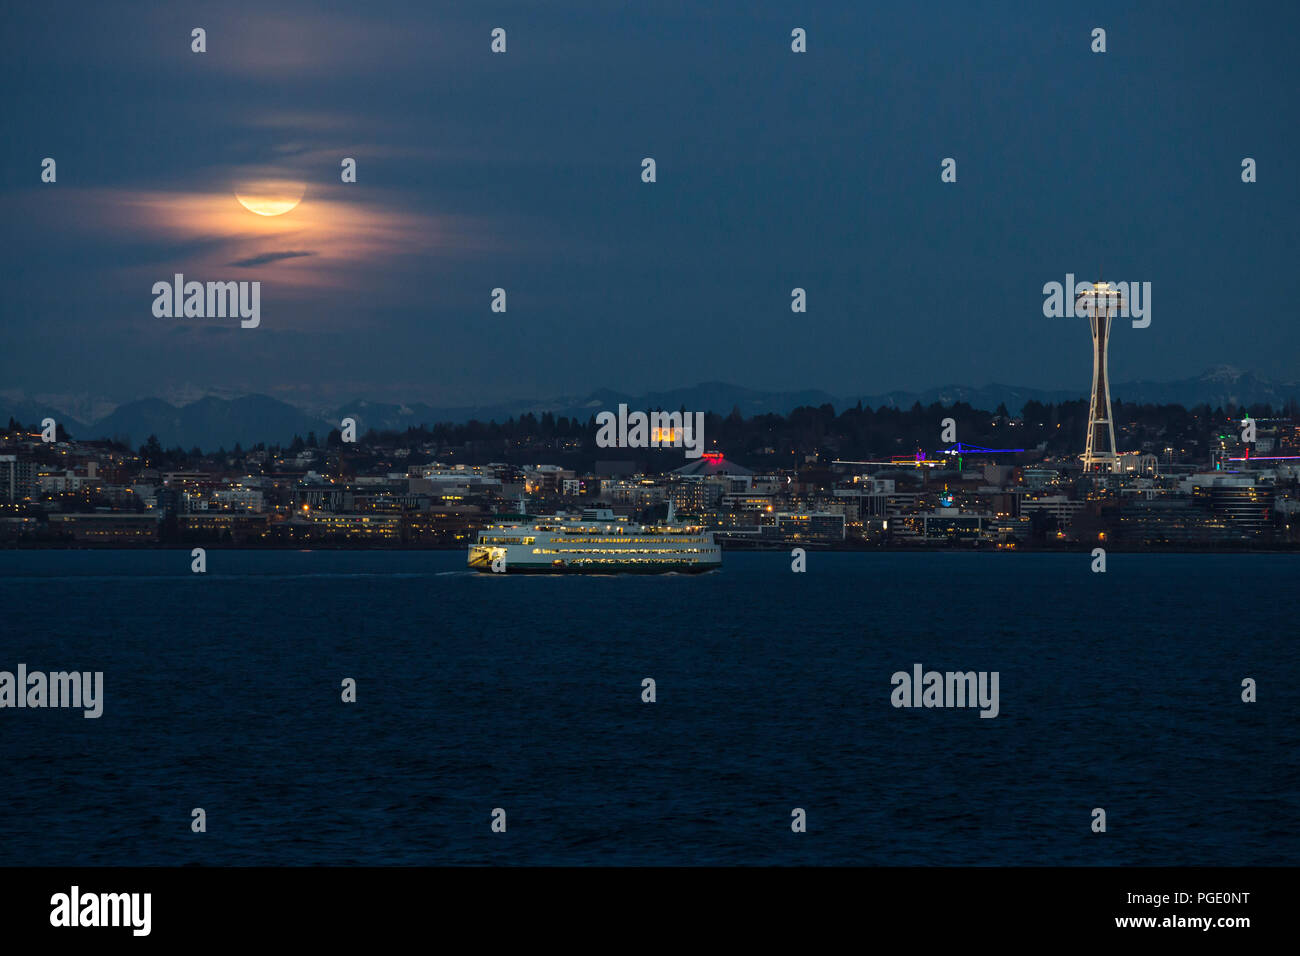 Seattle lo Space Needle e il Seattle skyline, Seattle Waterfront con traghetto di Seattle e luna piena ascesa. Foto Stock